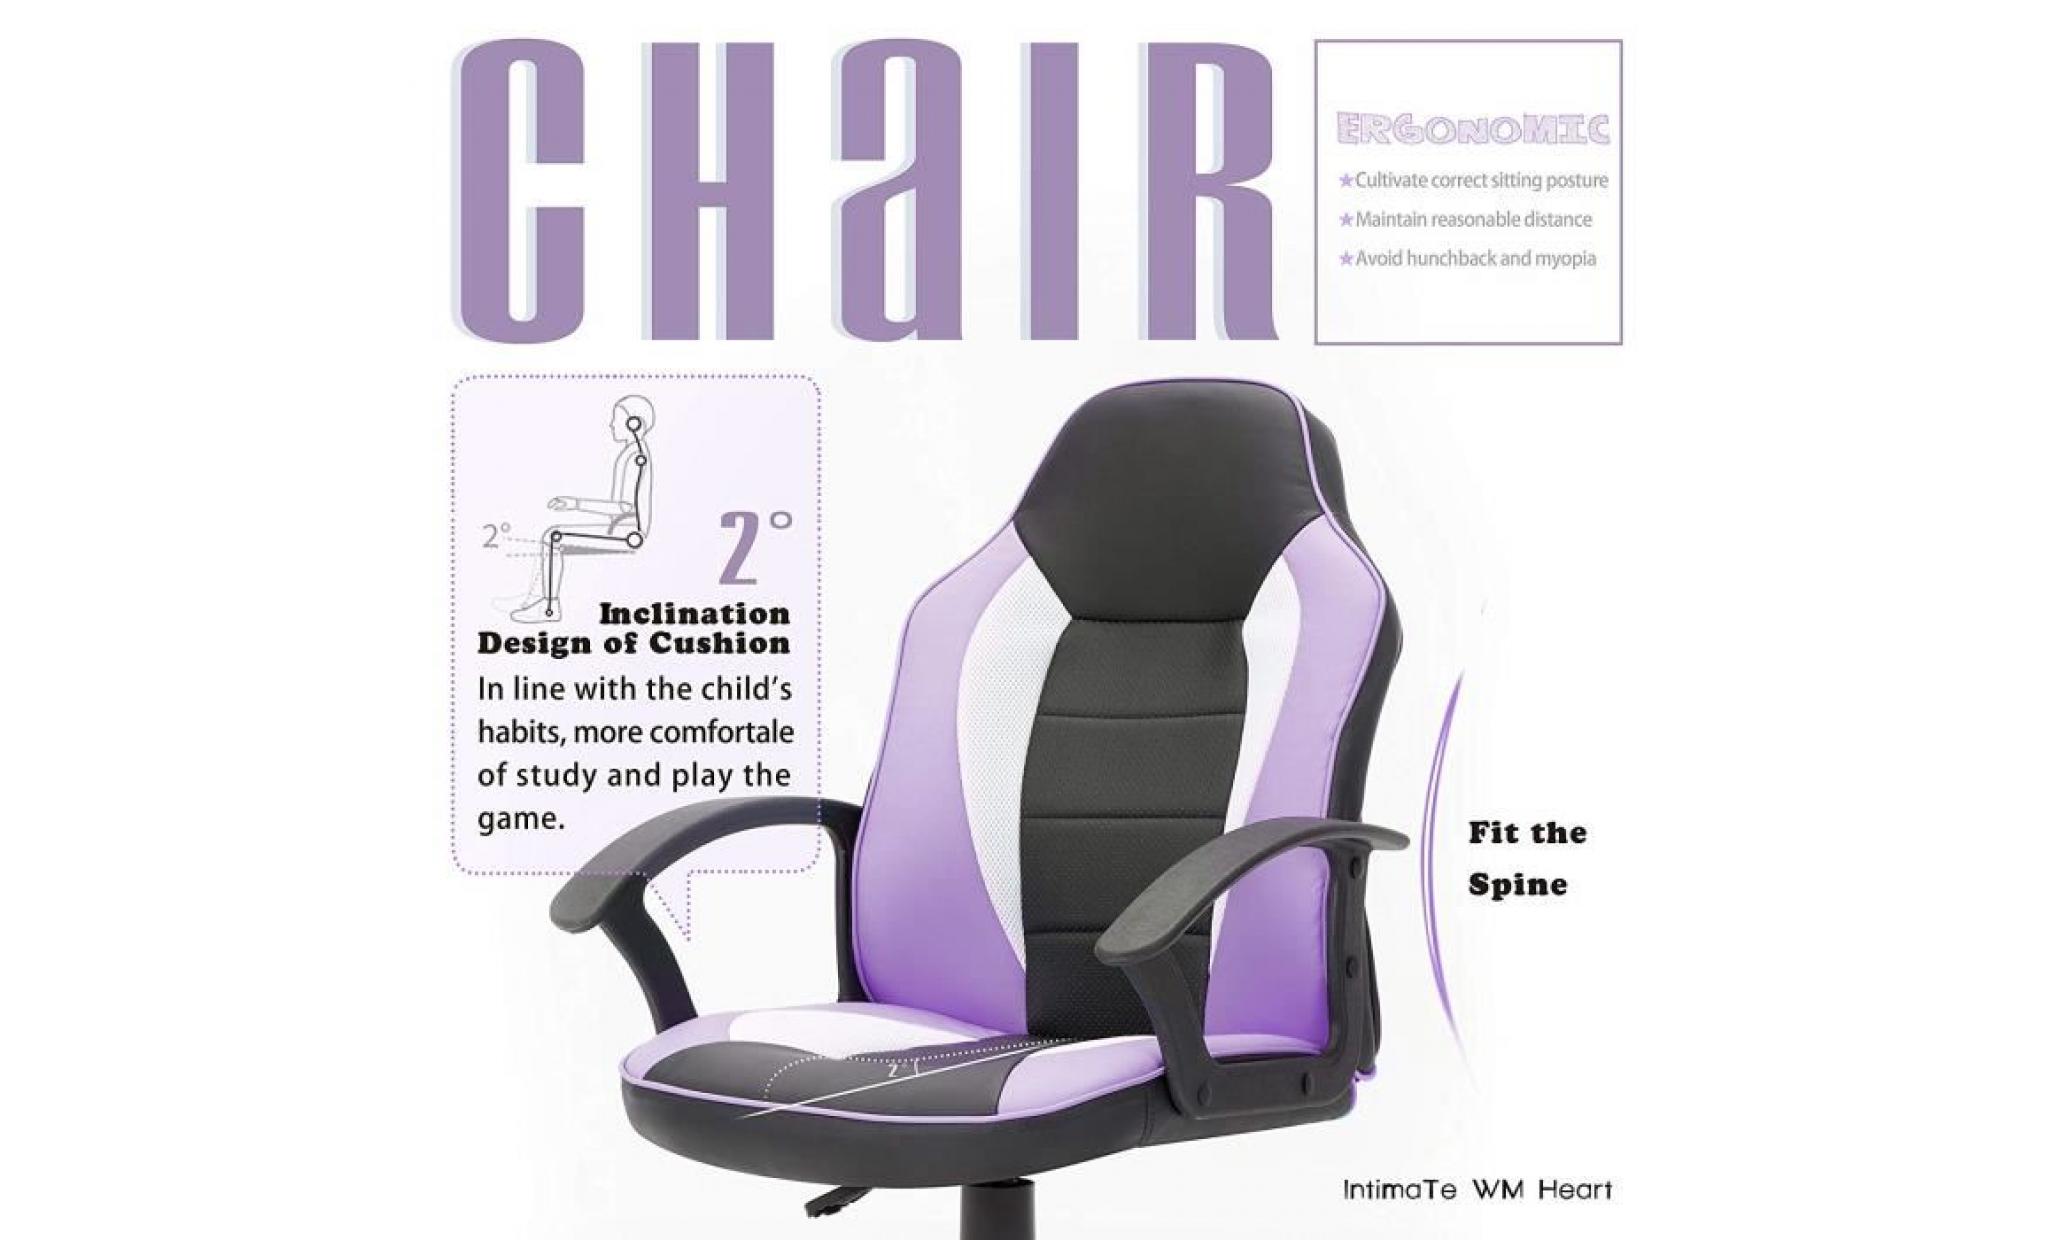 chaise de bureau pour enfant   siège etudiant   fauteuil de bureau réglable   bleu clair   intimate wm heart pas cher